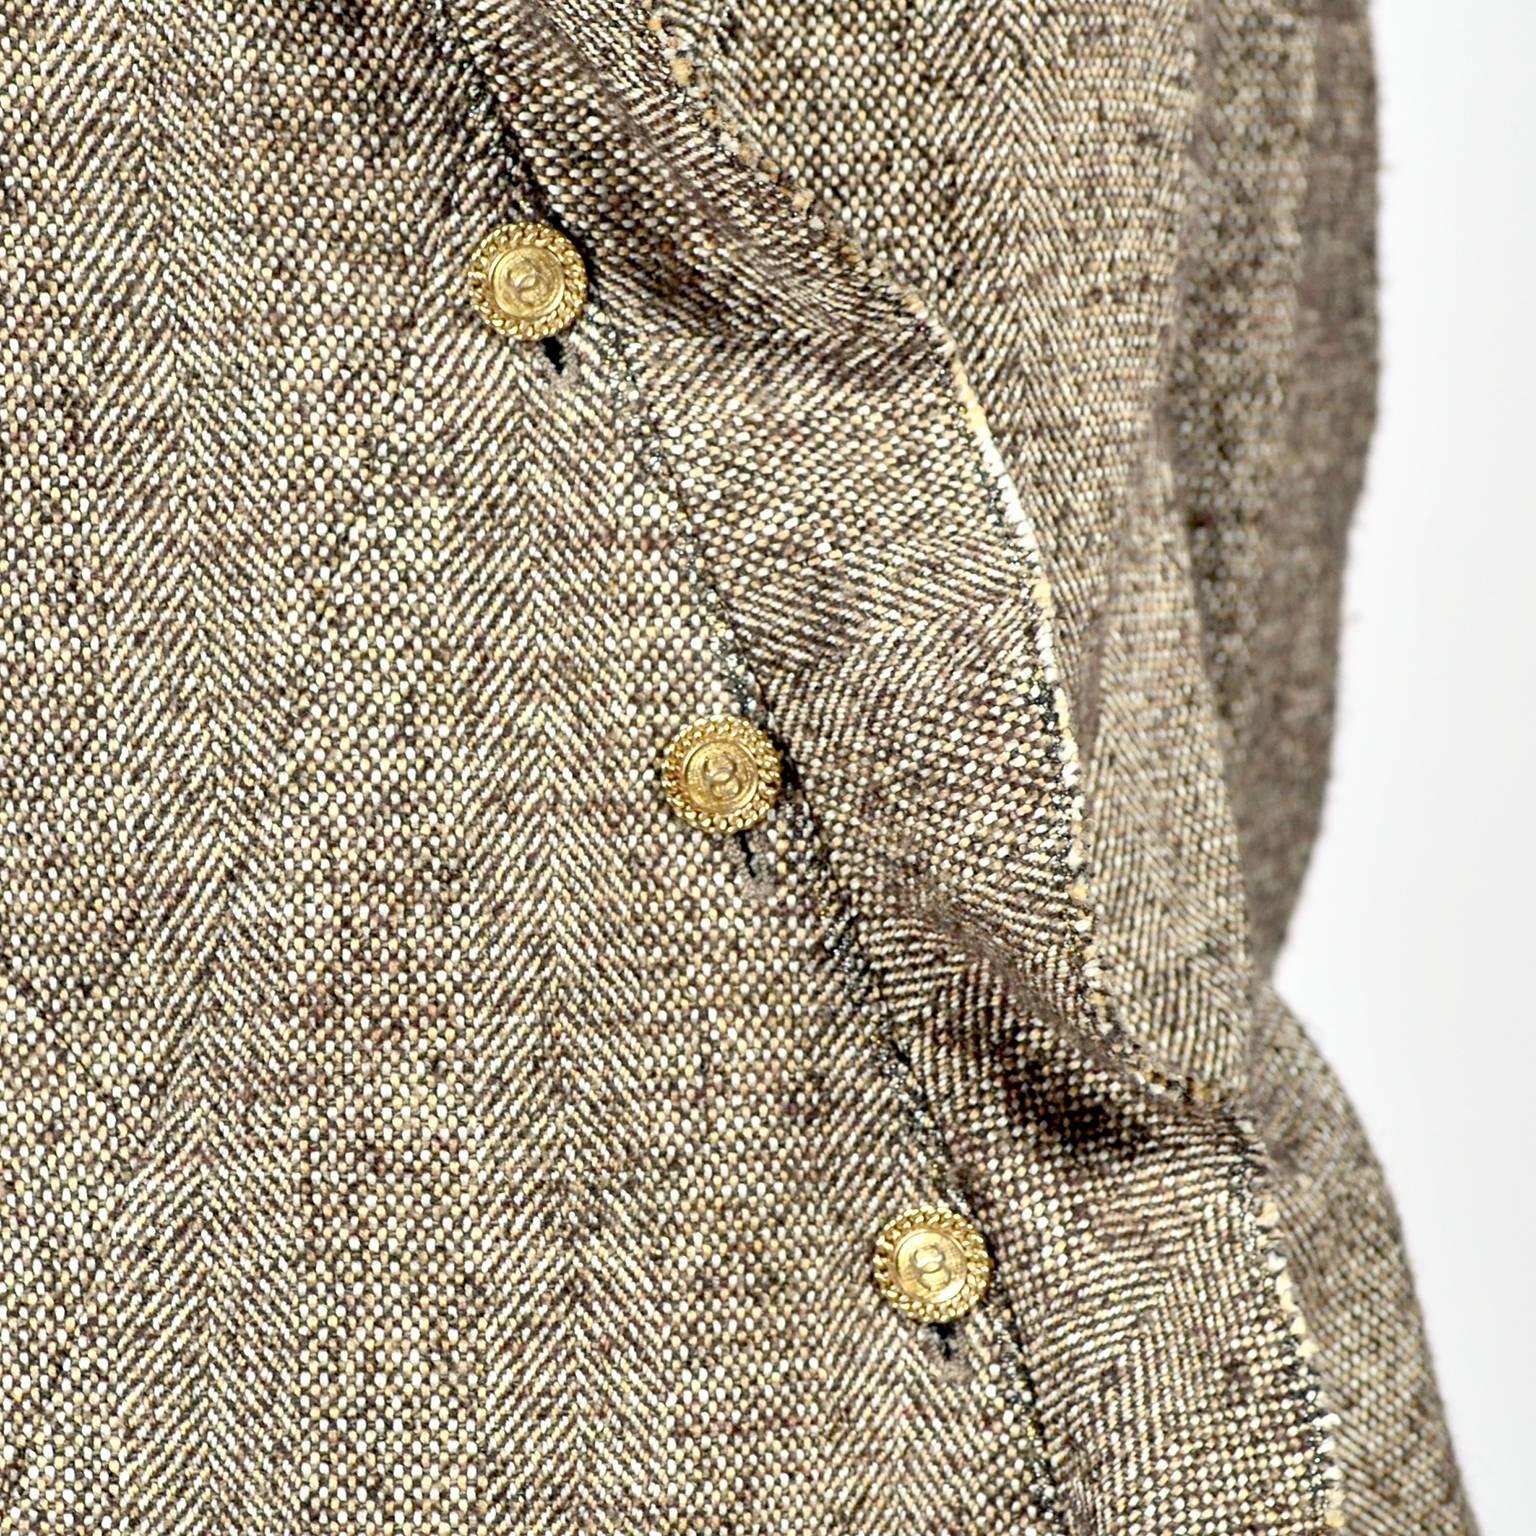 Chanel Jacket & Pants Suit From Autumn 2005 in Silk Alpaca Wool Blend w Ruffles 1